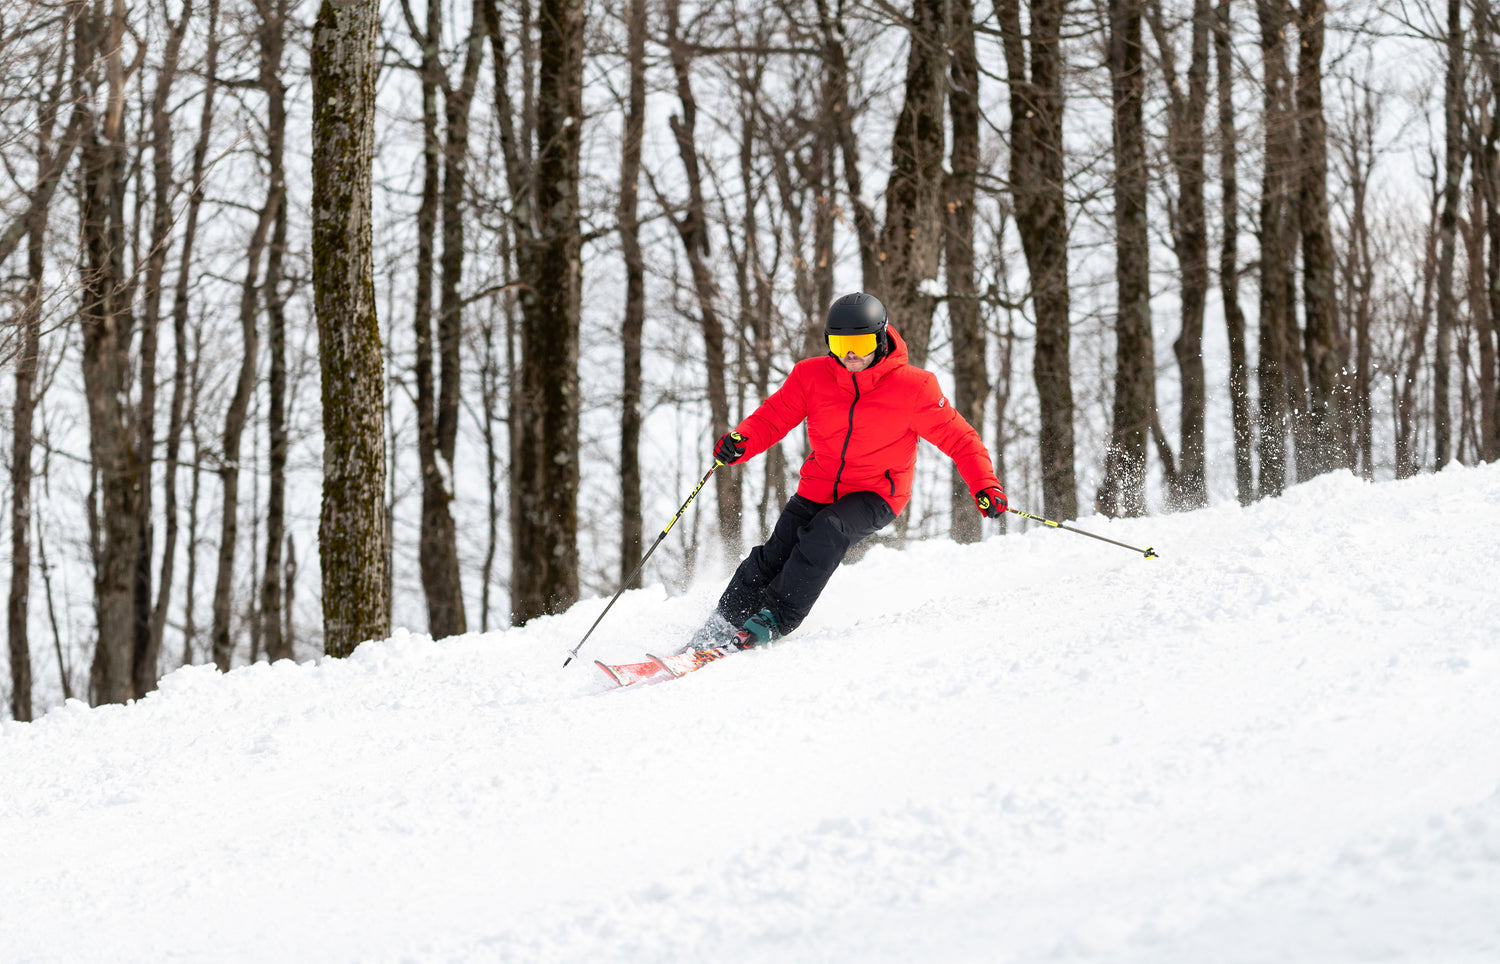 Comment ajuste-t-on une botte de ski? – Oberson